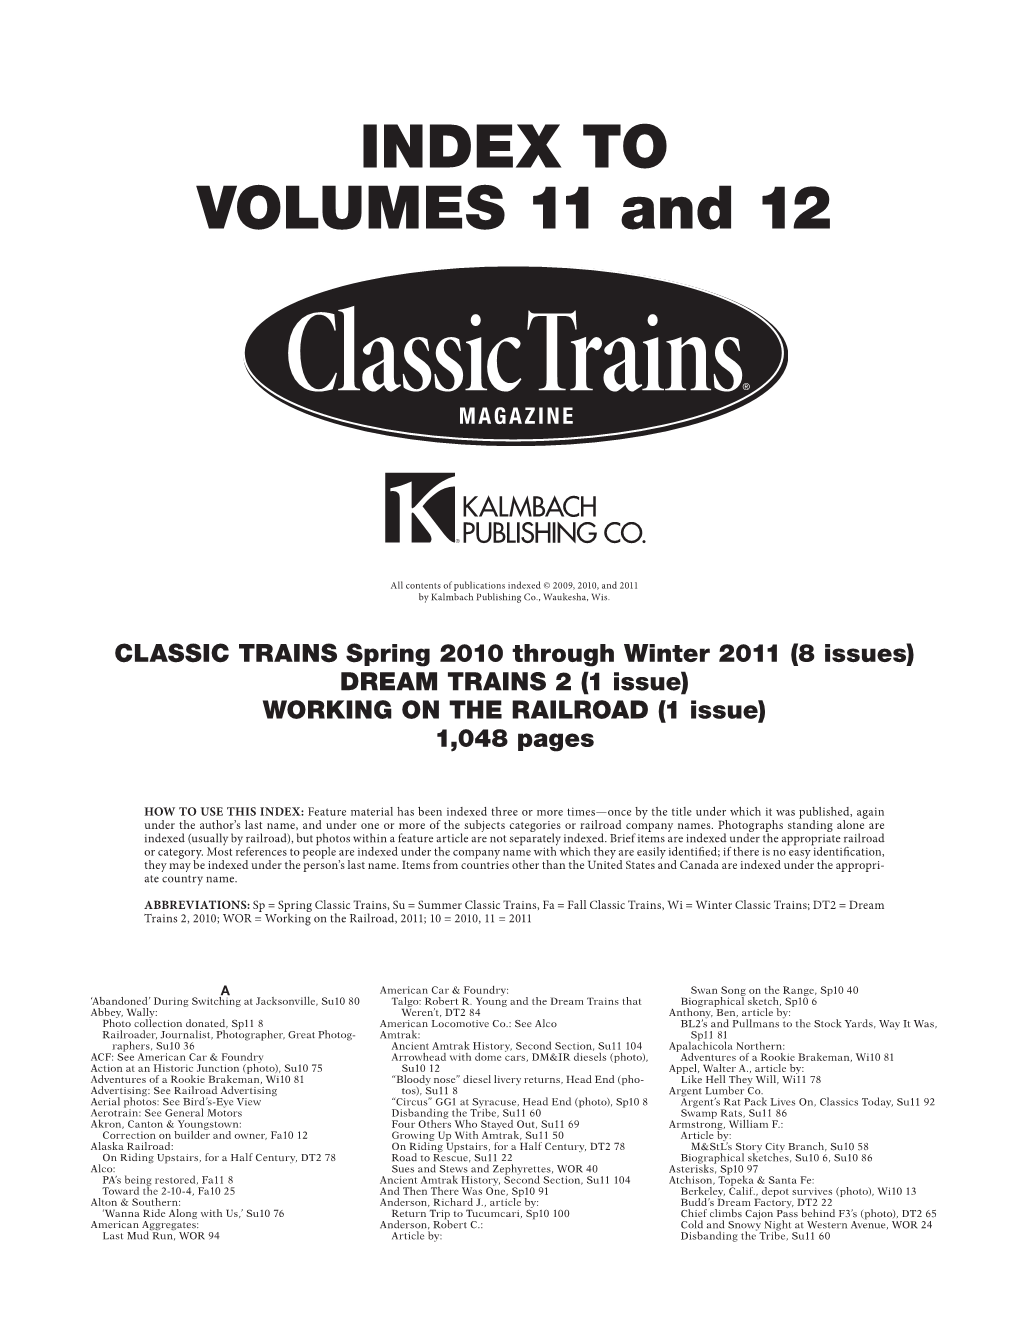 Classic Trains' 2010-2011 Index